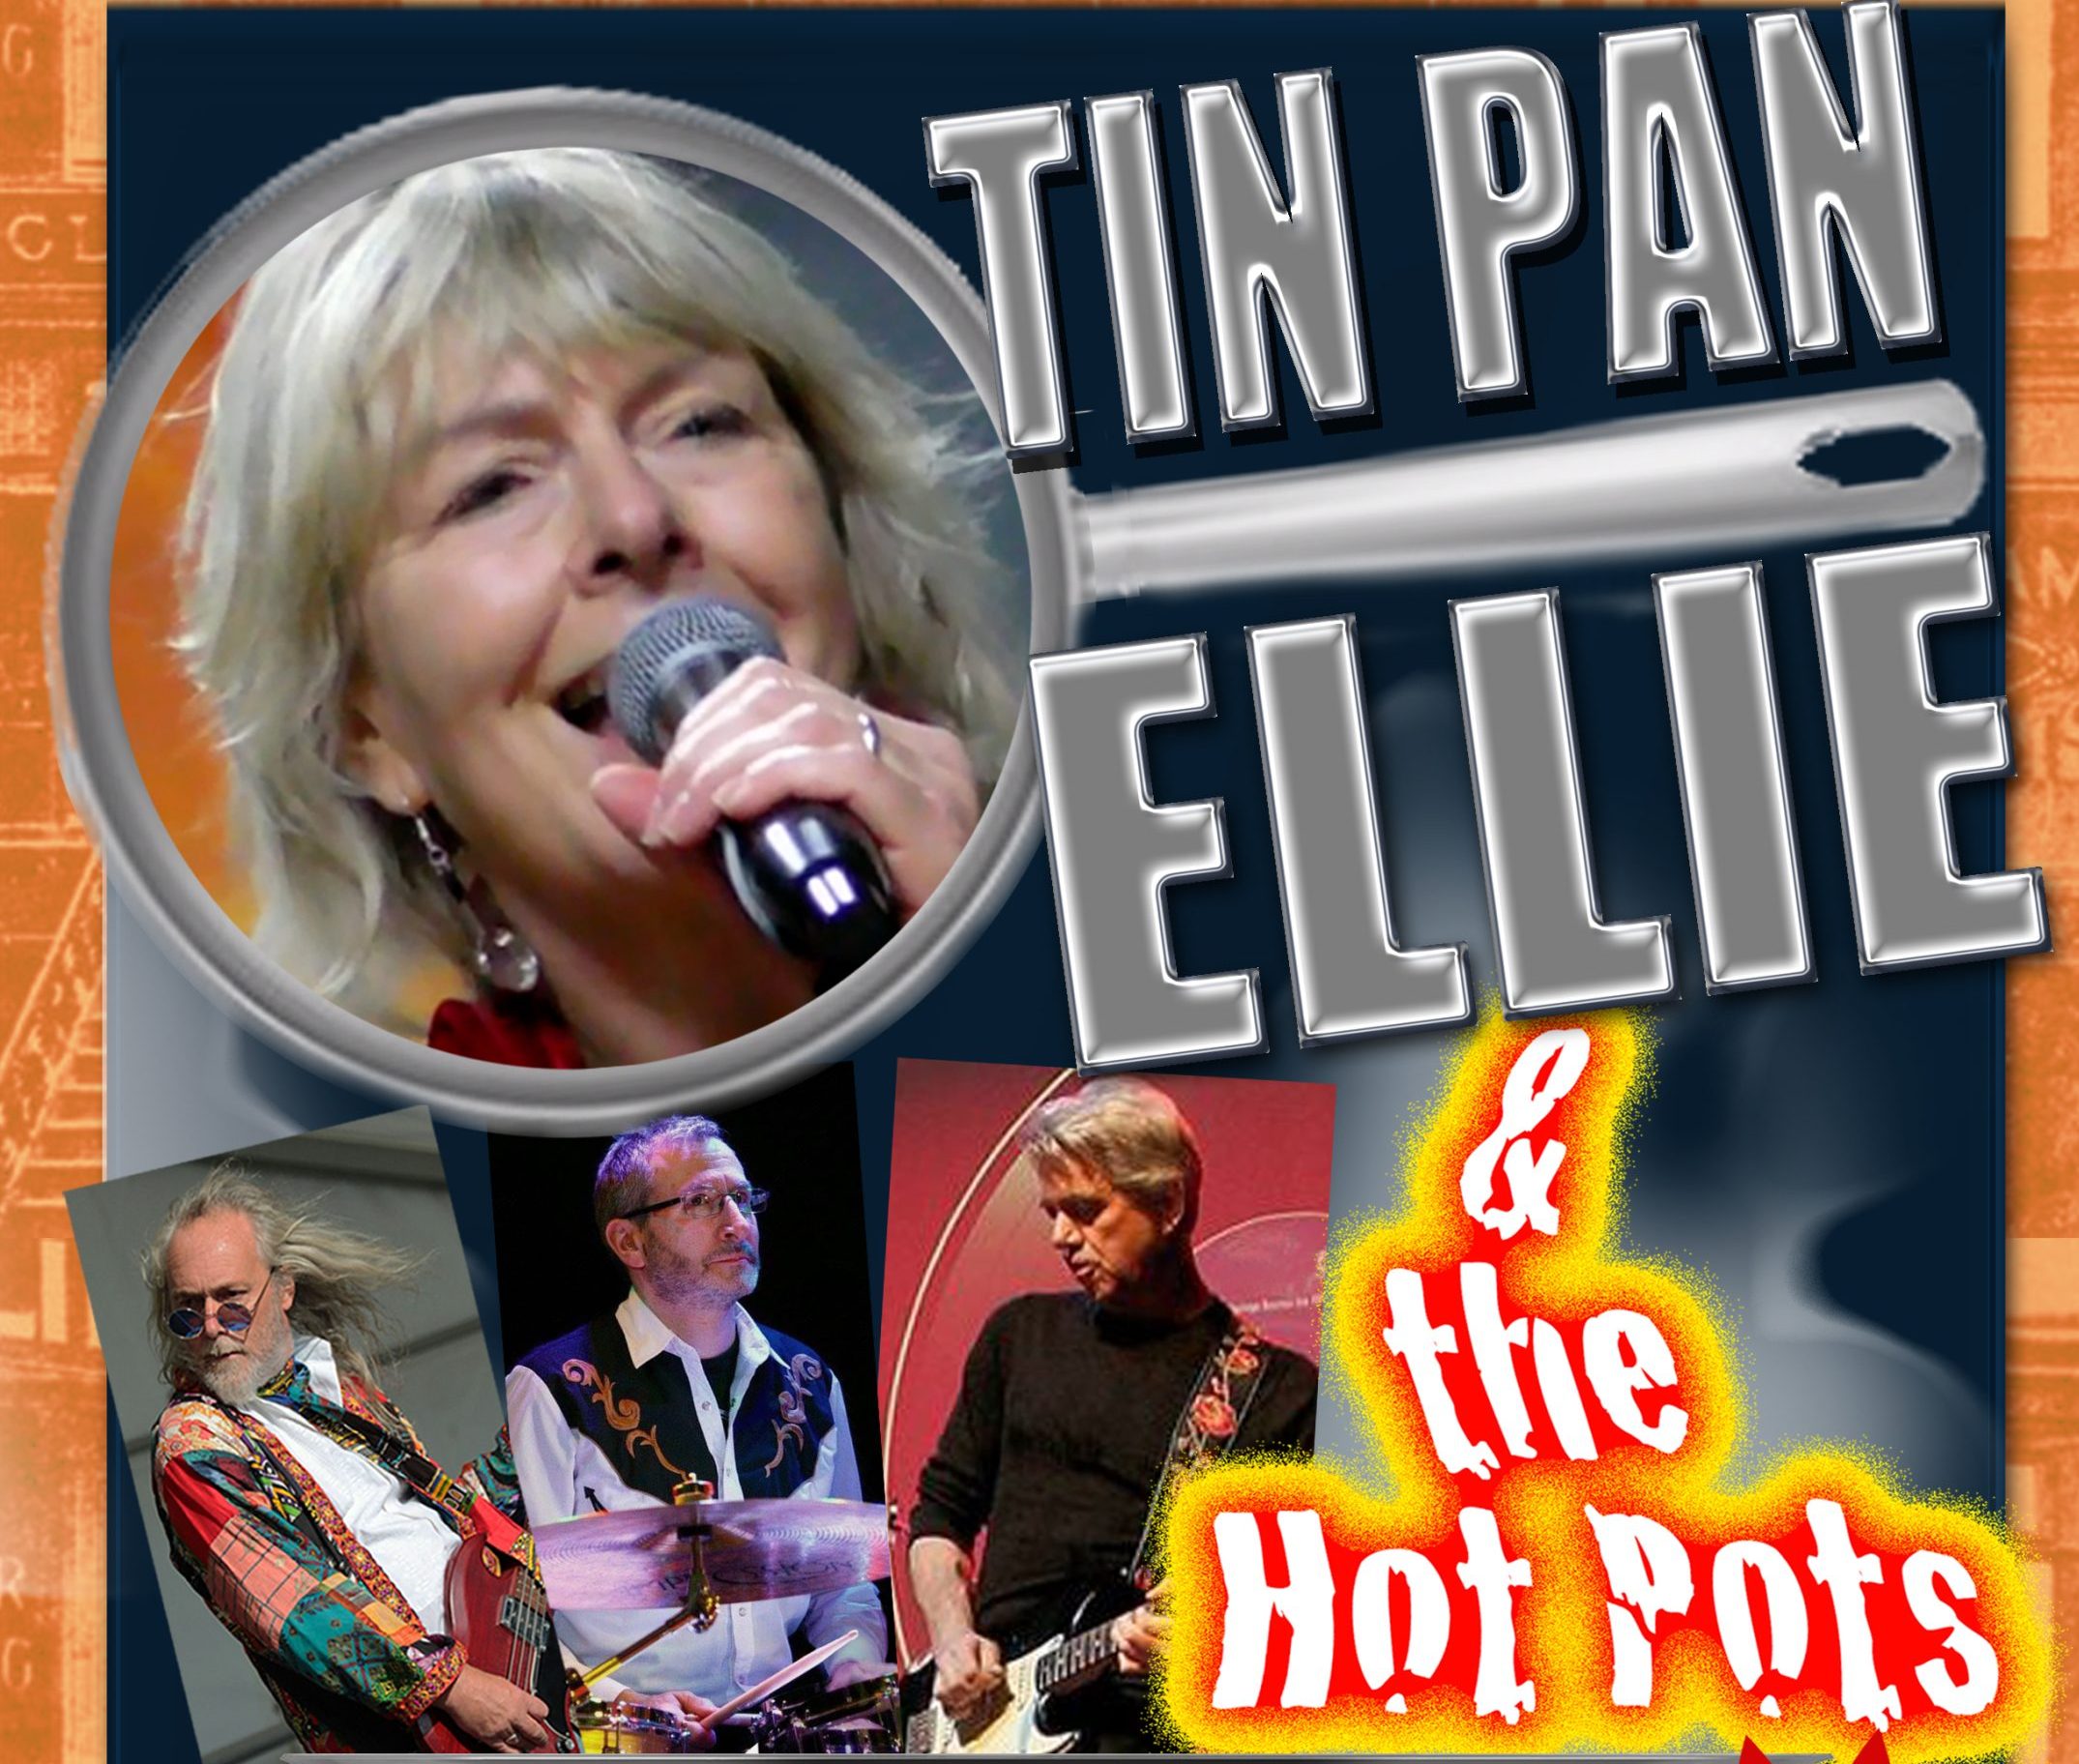 Tin Pan Ellie & the Hot Pots